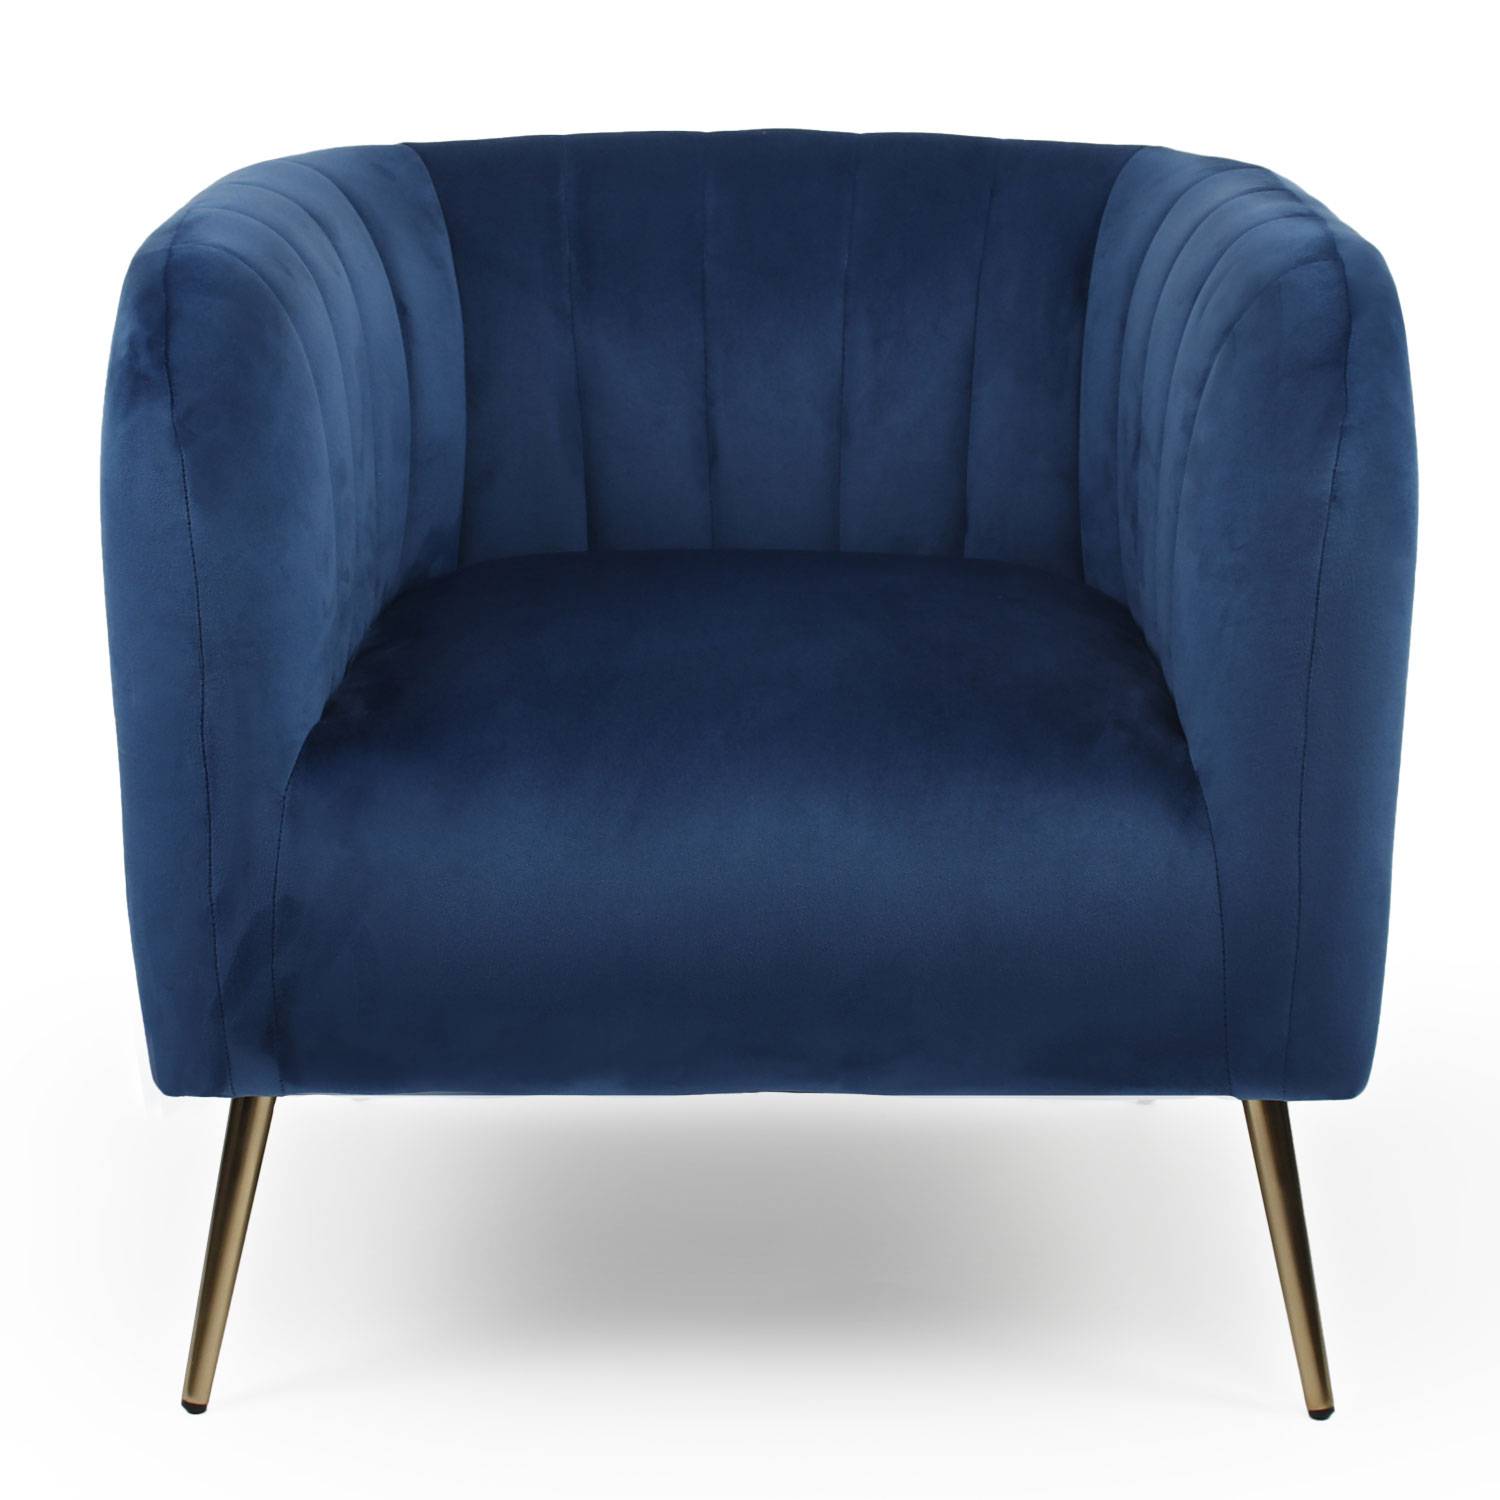 Bombaro moderne fauteuil met vergulde metalen poten en blauw fluweel